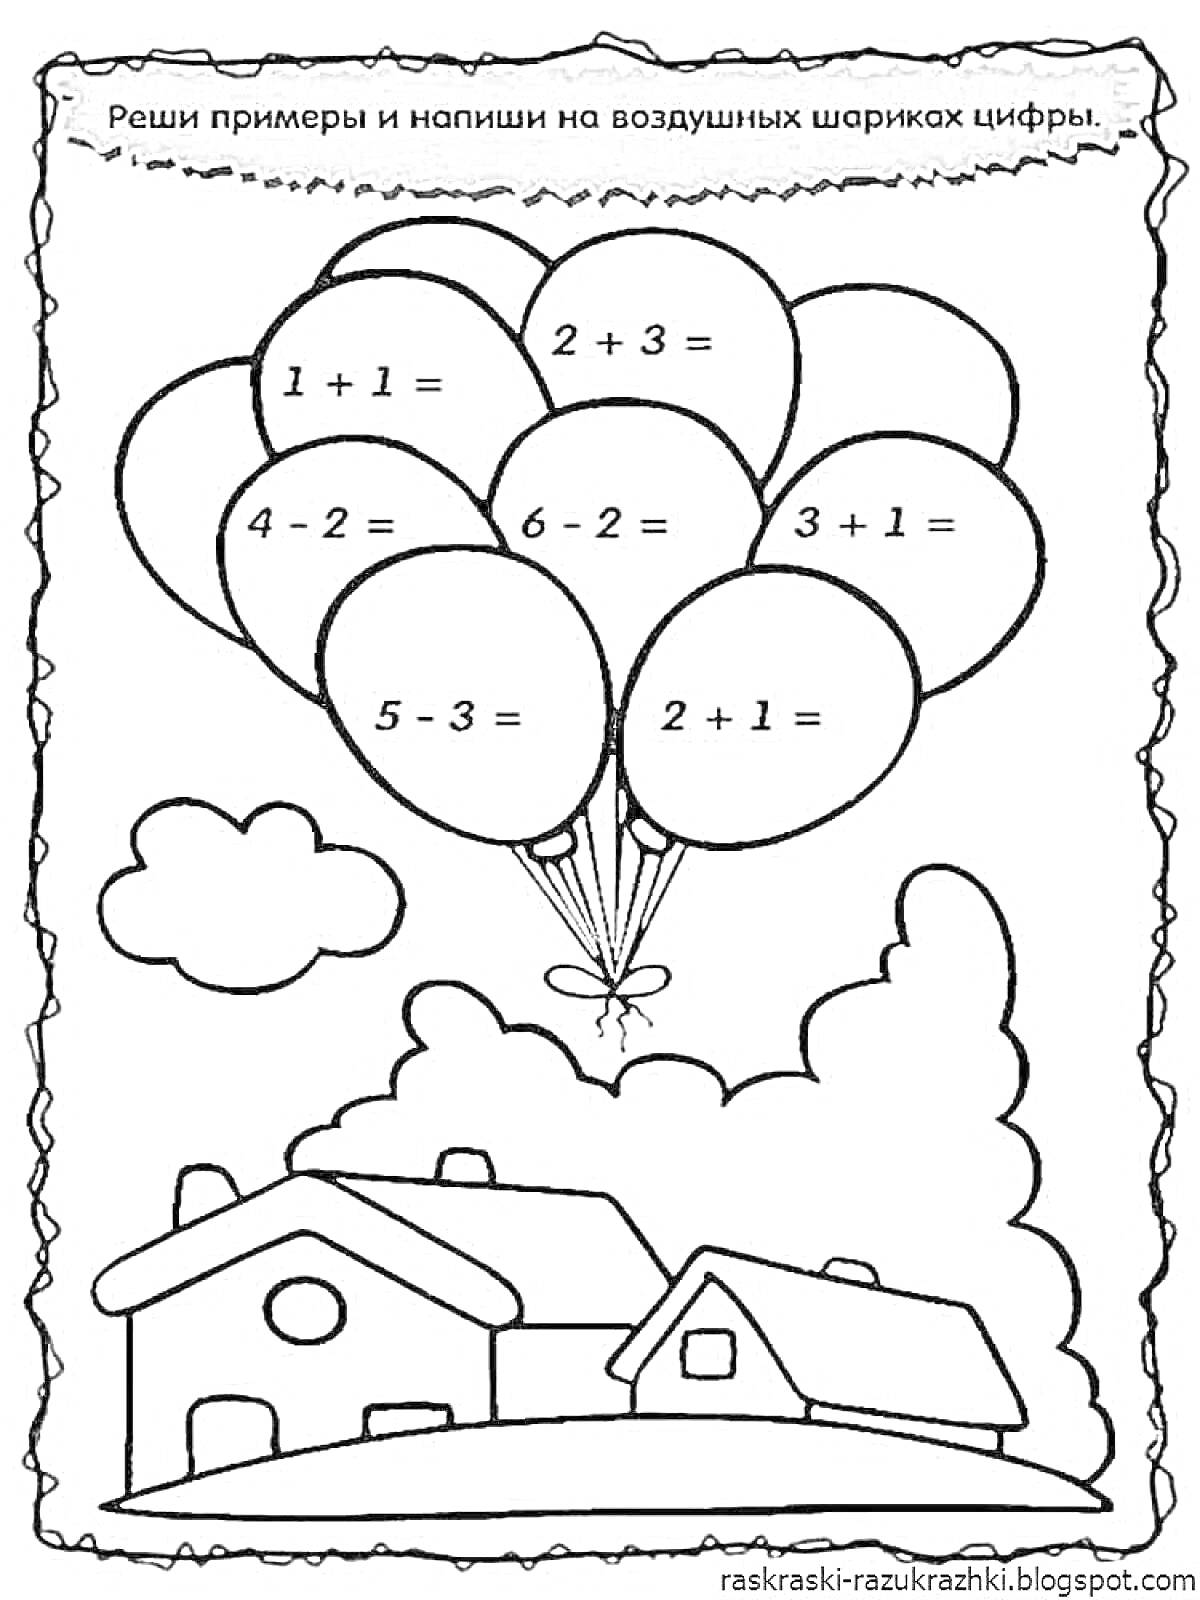 Раскраска Раскраска с заданиями для дошкольников - реши примеры на воздушных шариках и раскрась домики, облака и шары